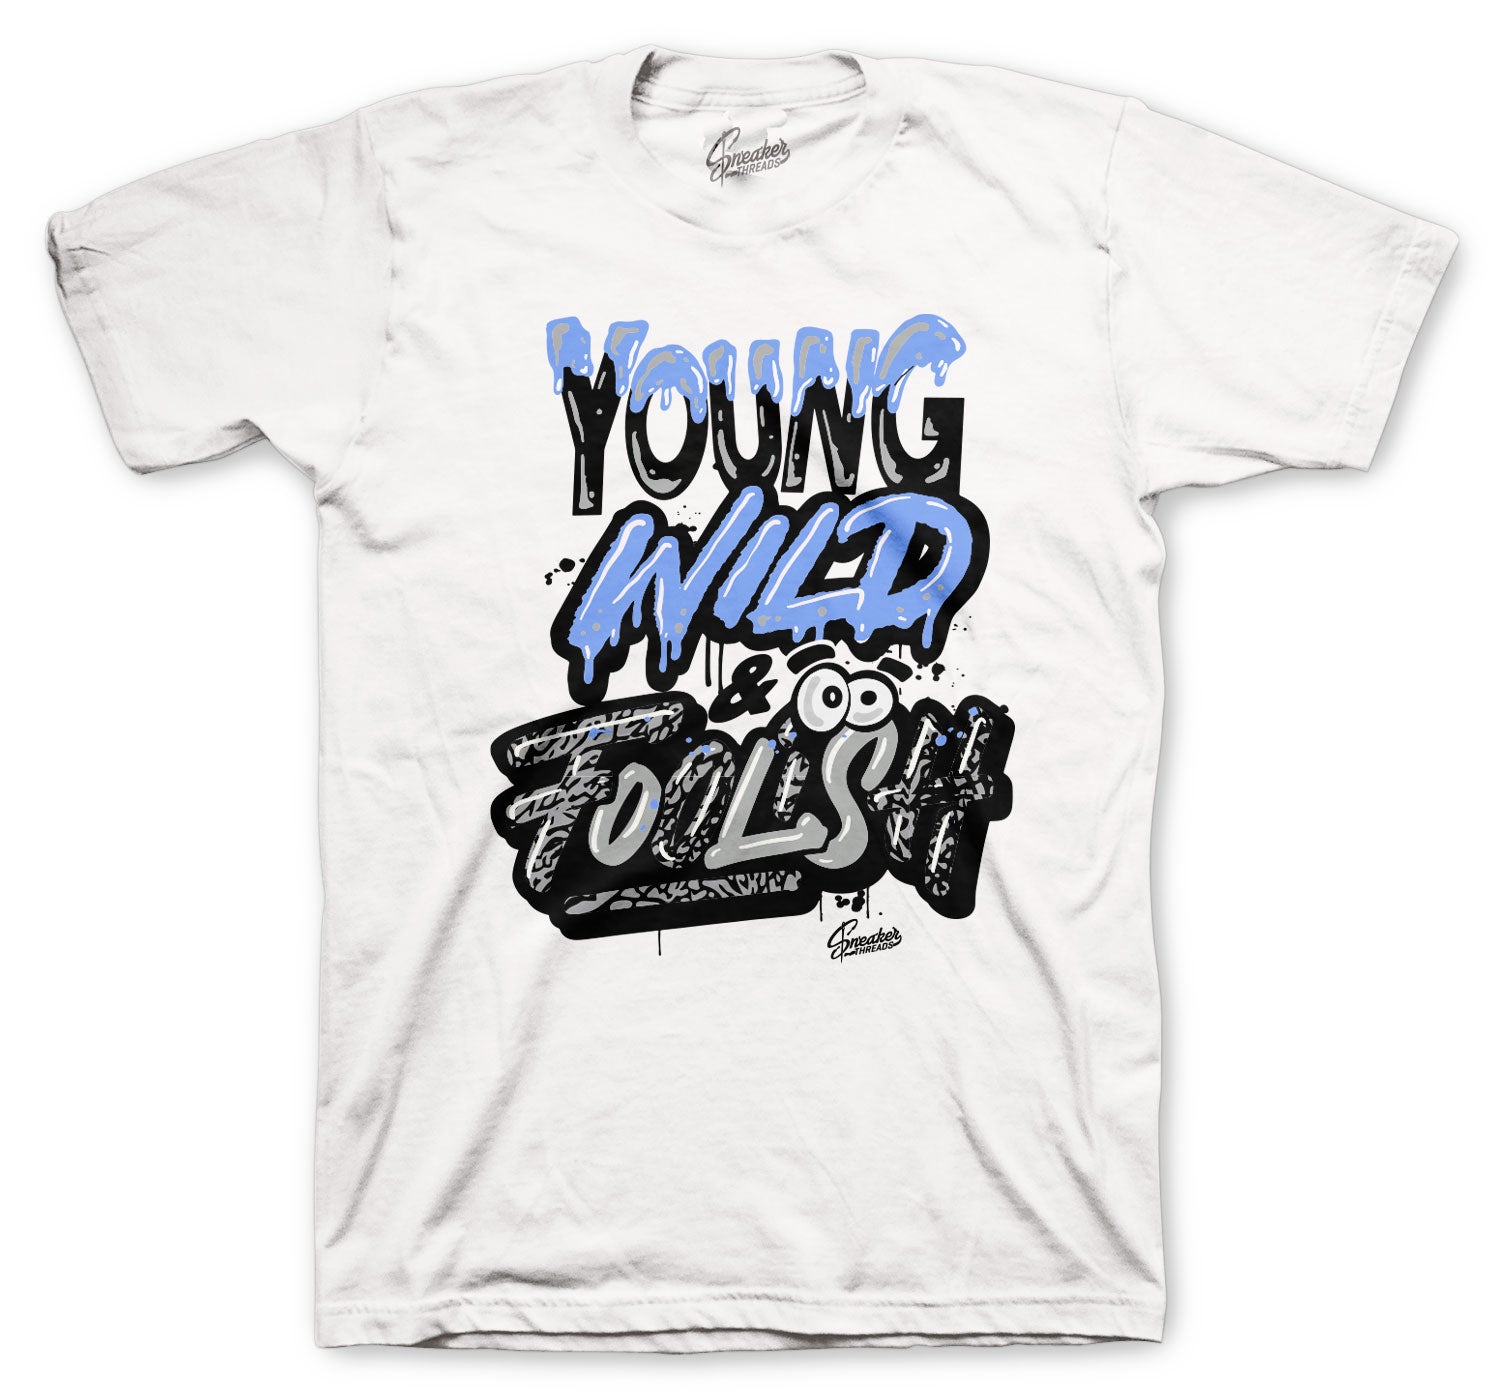 Retro 3 Valor Blue Shirt - Young Wild - White